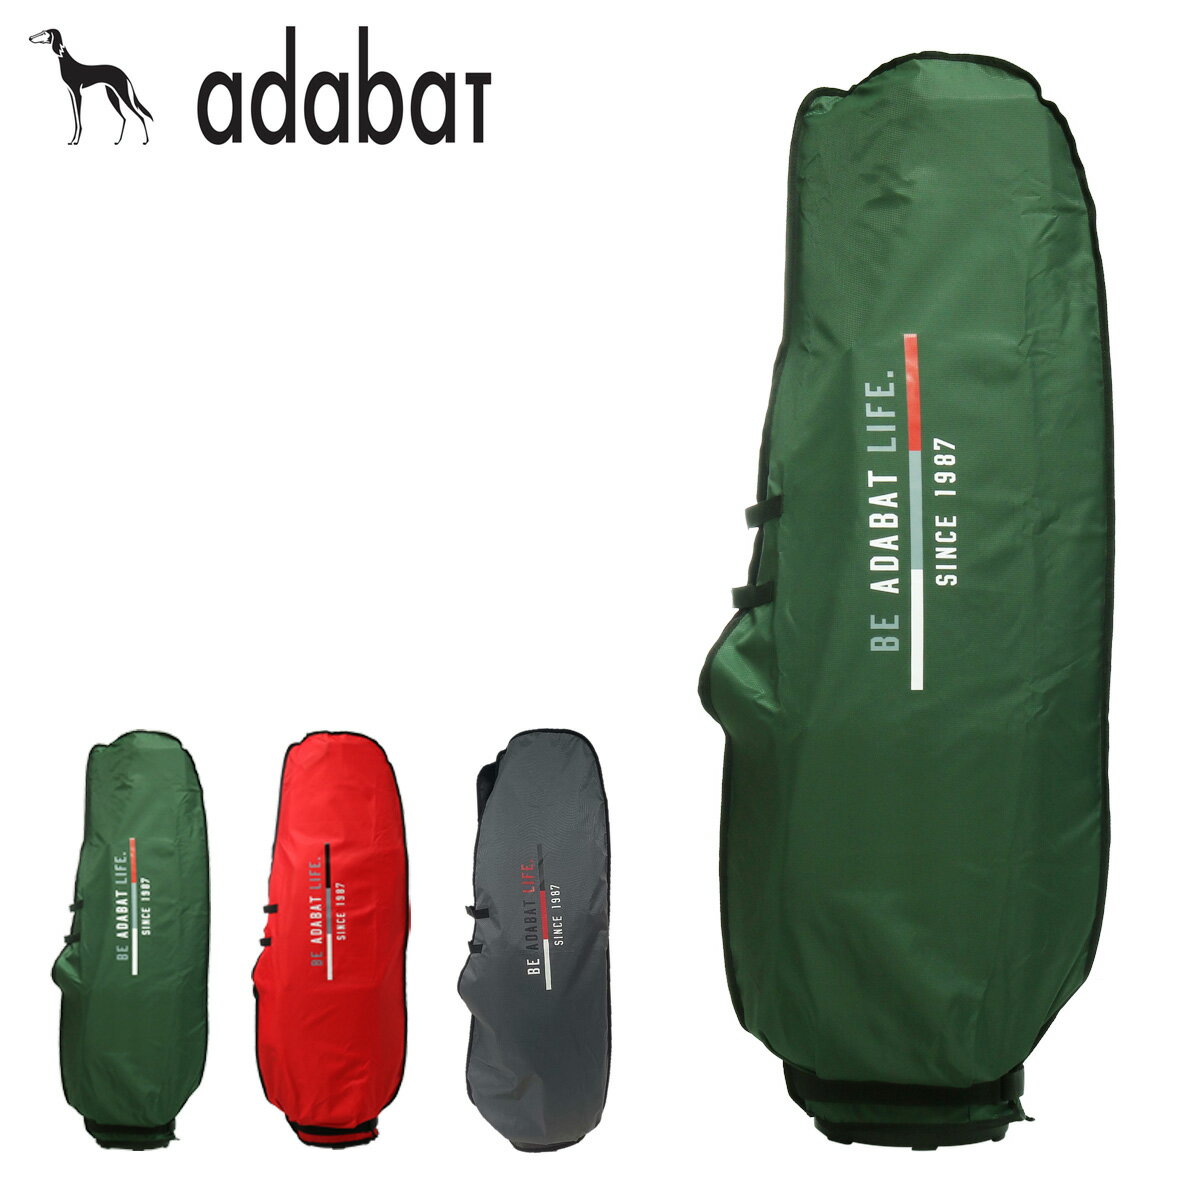 アダバット ゴルフ トラベルカバー 9型キャディバッグ用 メンズ ABO428 adabat GOLF 旅行 トラベル キャディバッグカバー 軽量 折り畳み[即日発送][PO10]